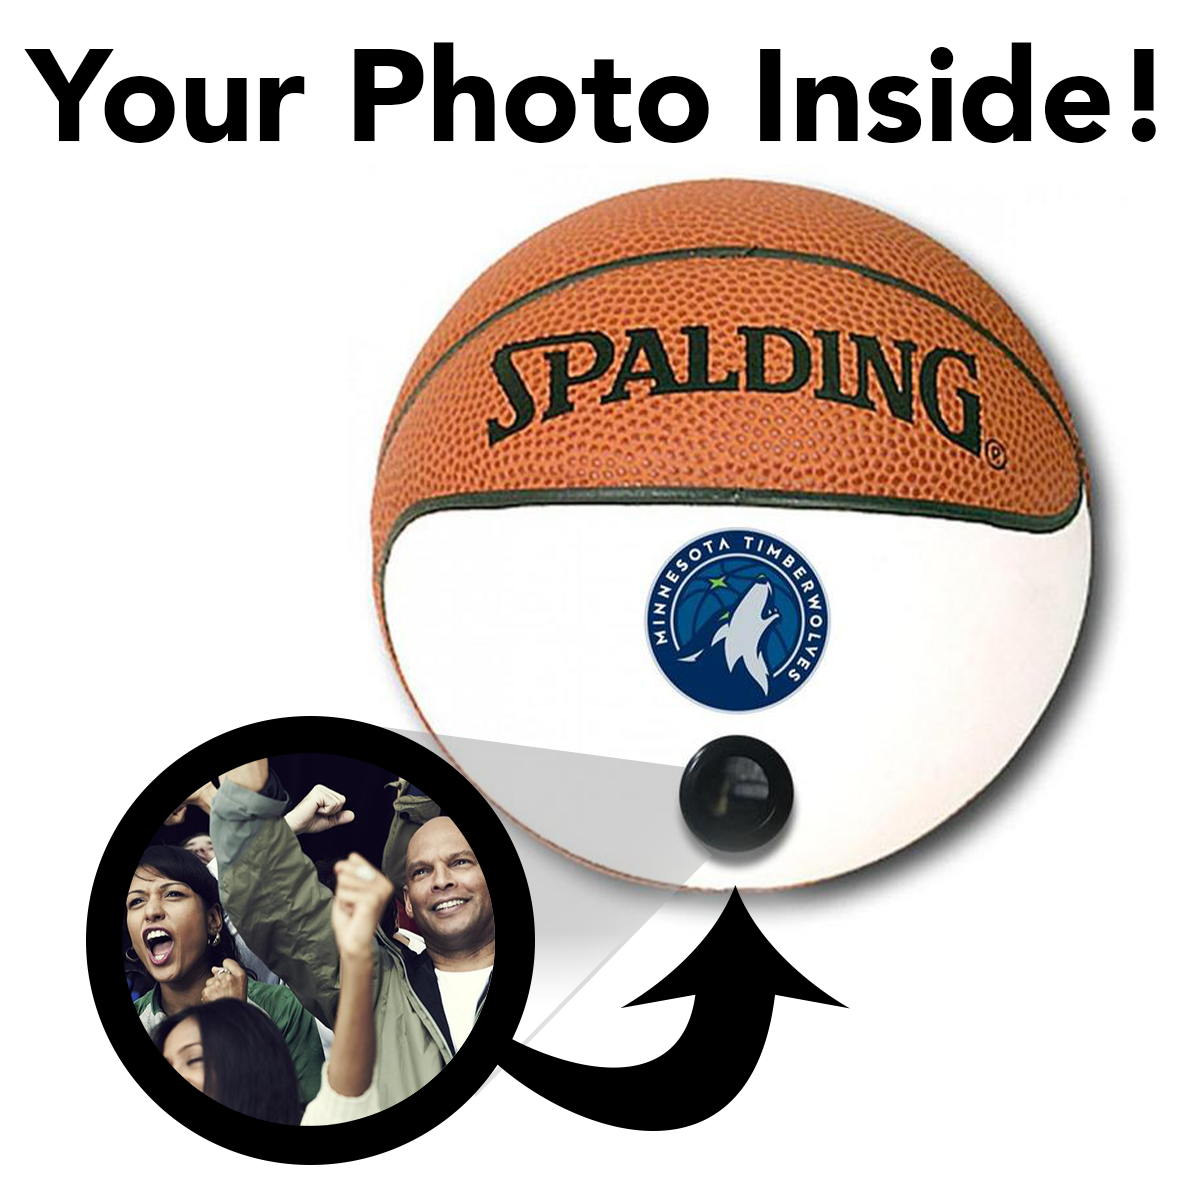 Timberwolves NBA Collectible Miniature Basketball - Picture Inside - FANZ Collectibles - Fanz Collectibles